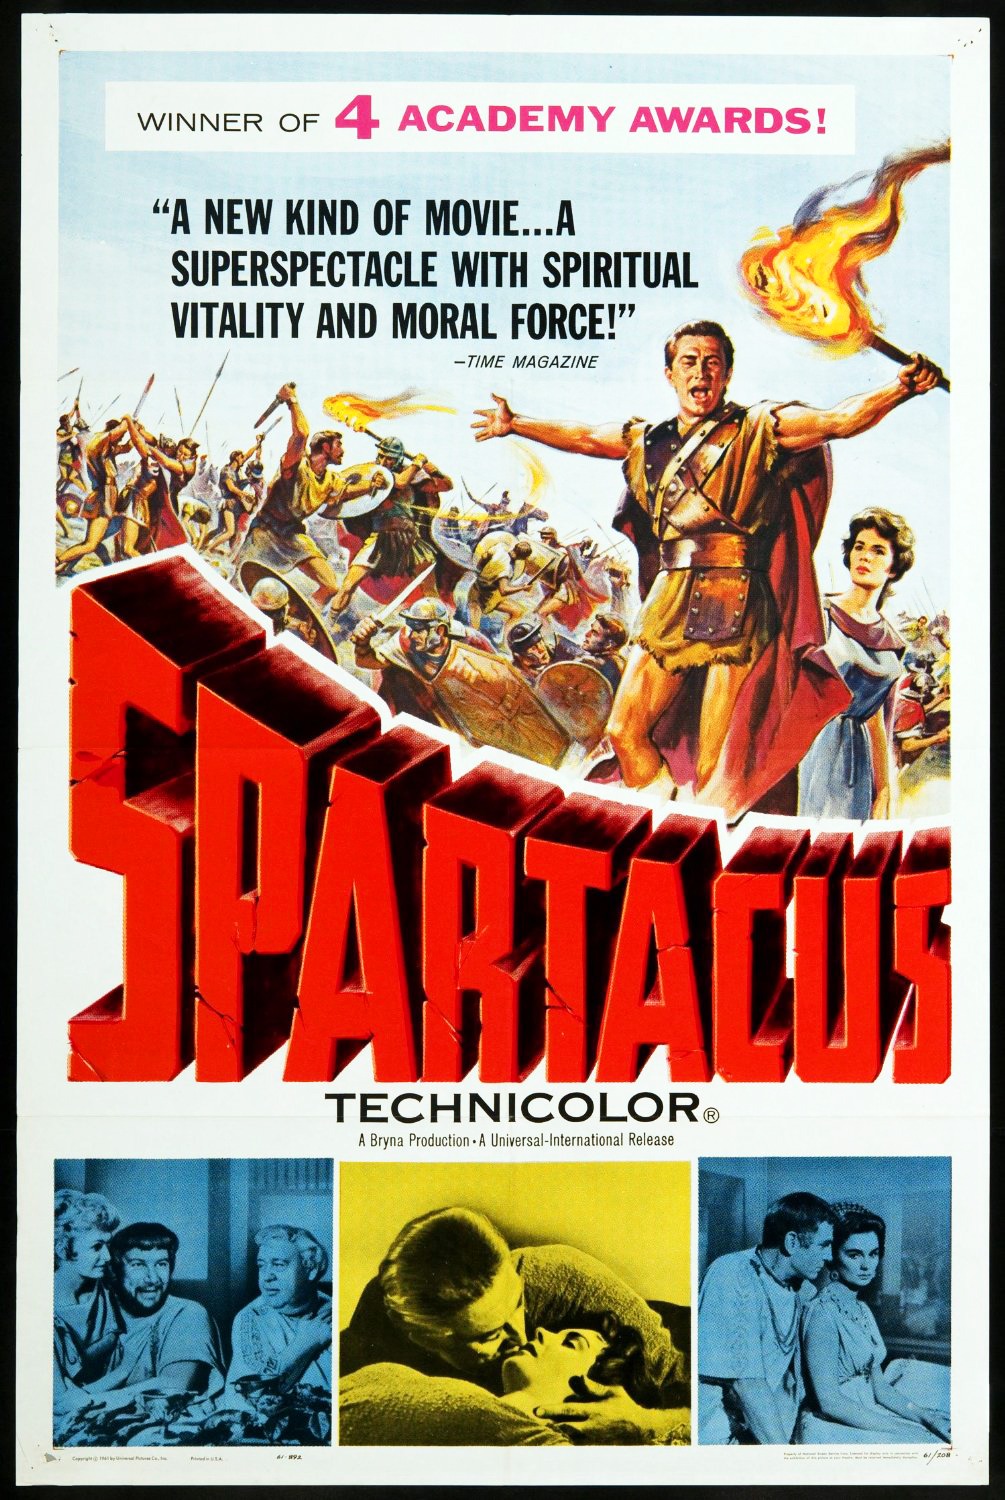 The original Spartacus movie poster